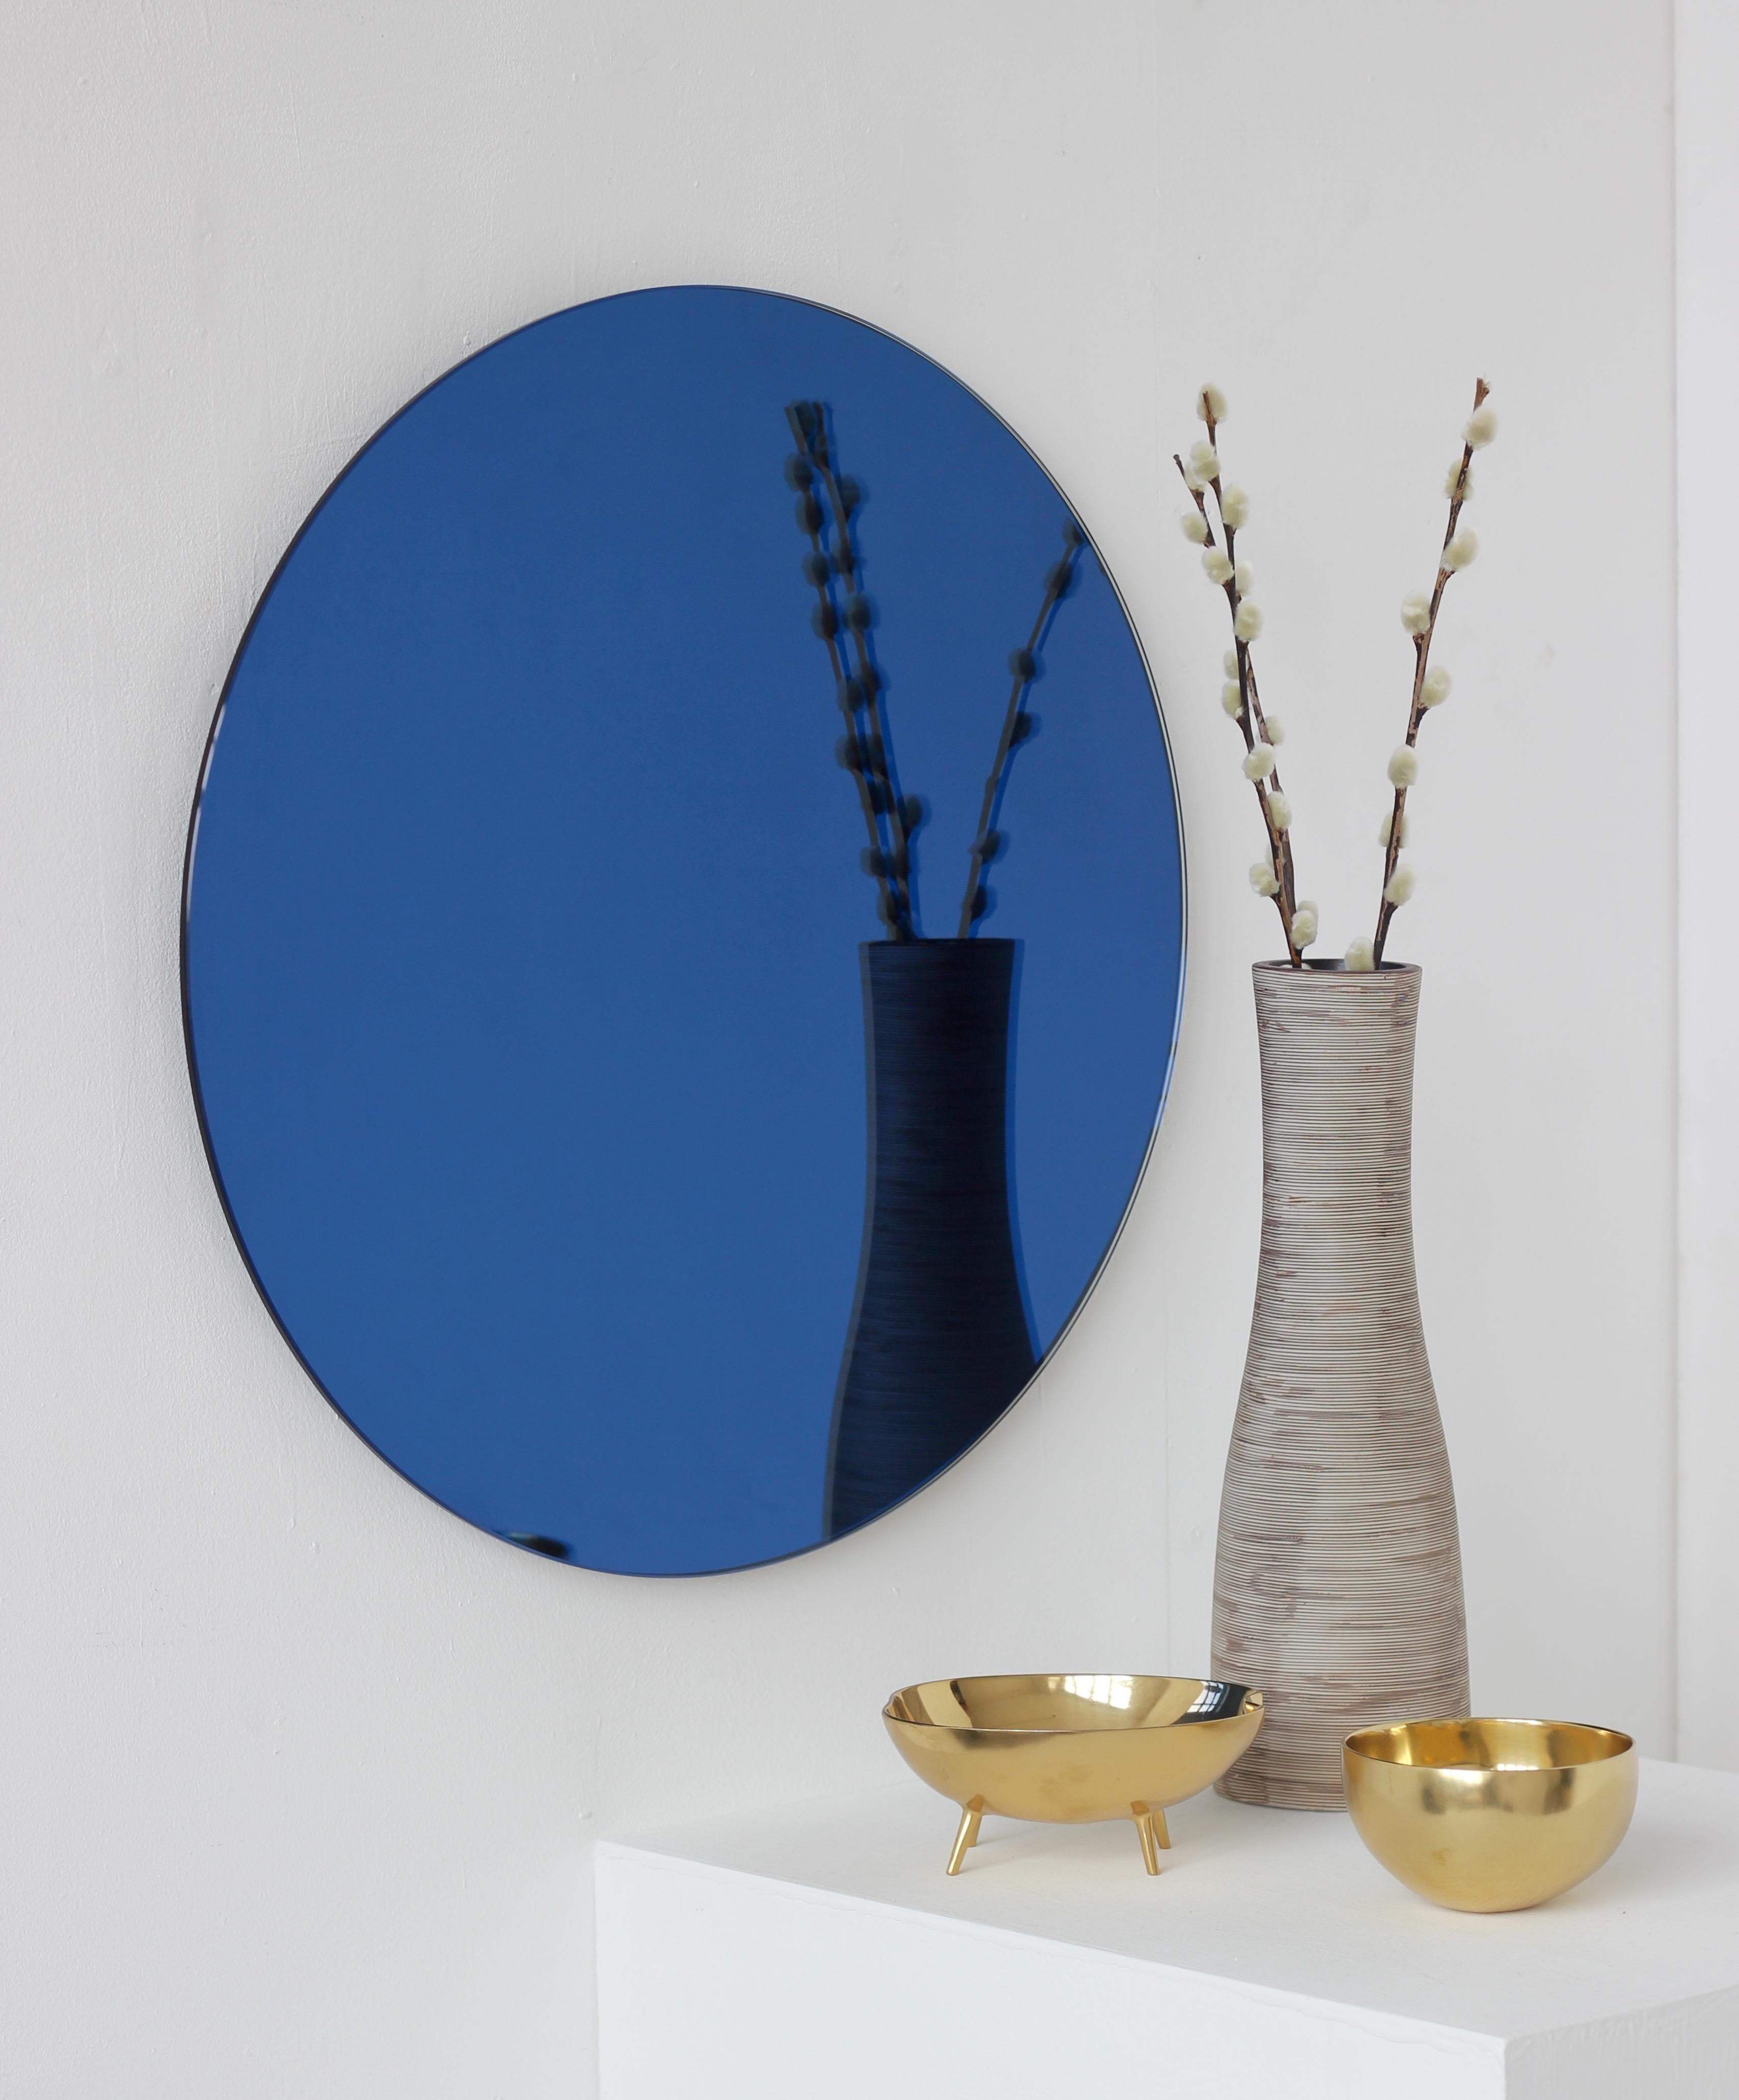 Charmant et minimaliste miroir rond sans cadre Orbis™ teinté de bleu avec un effet flottant. Un design de qualité qui garantit que le miroir est parfaitement parallèle au mur. Conçu et fabriqué à Londres, au Royaume-Uni.

Equipé de plaques